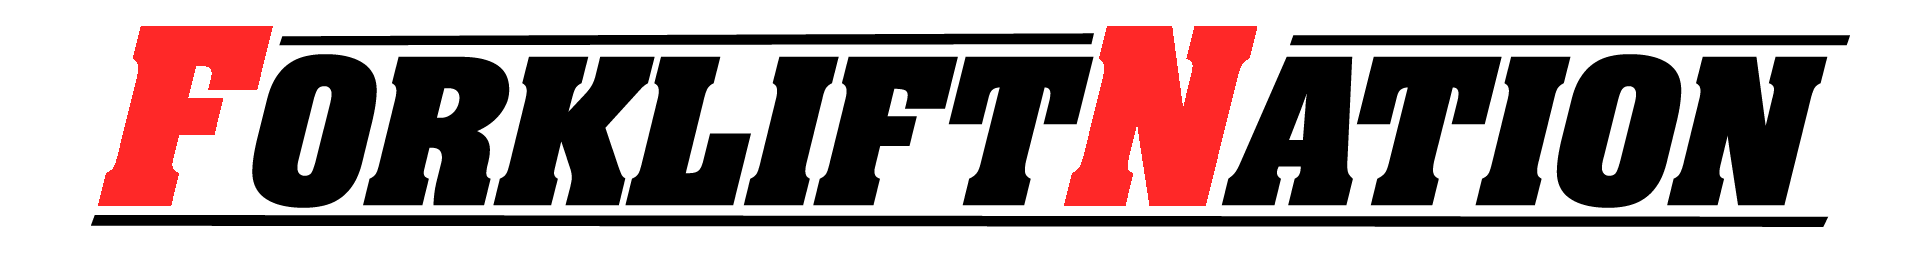 forkliftnation-logo-home